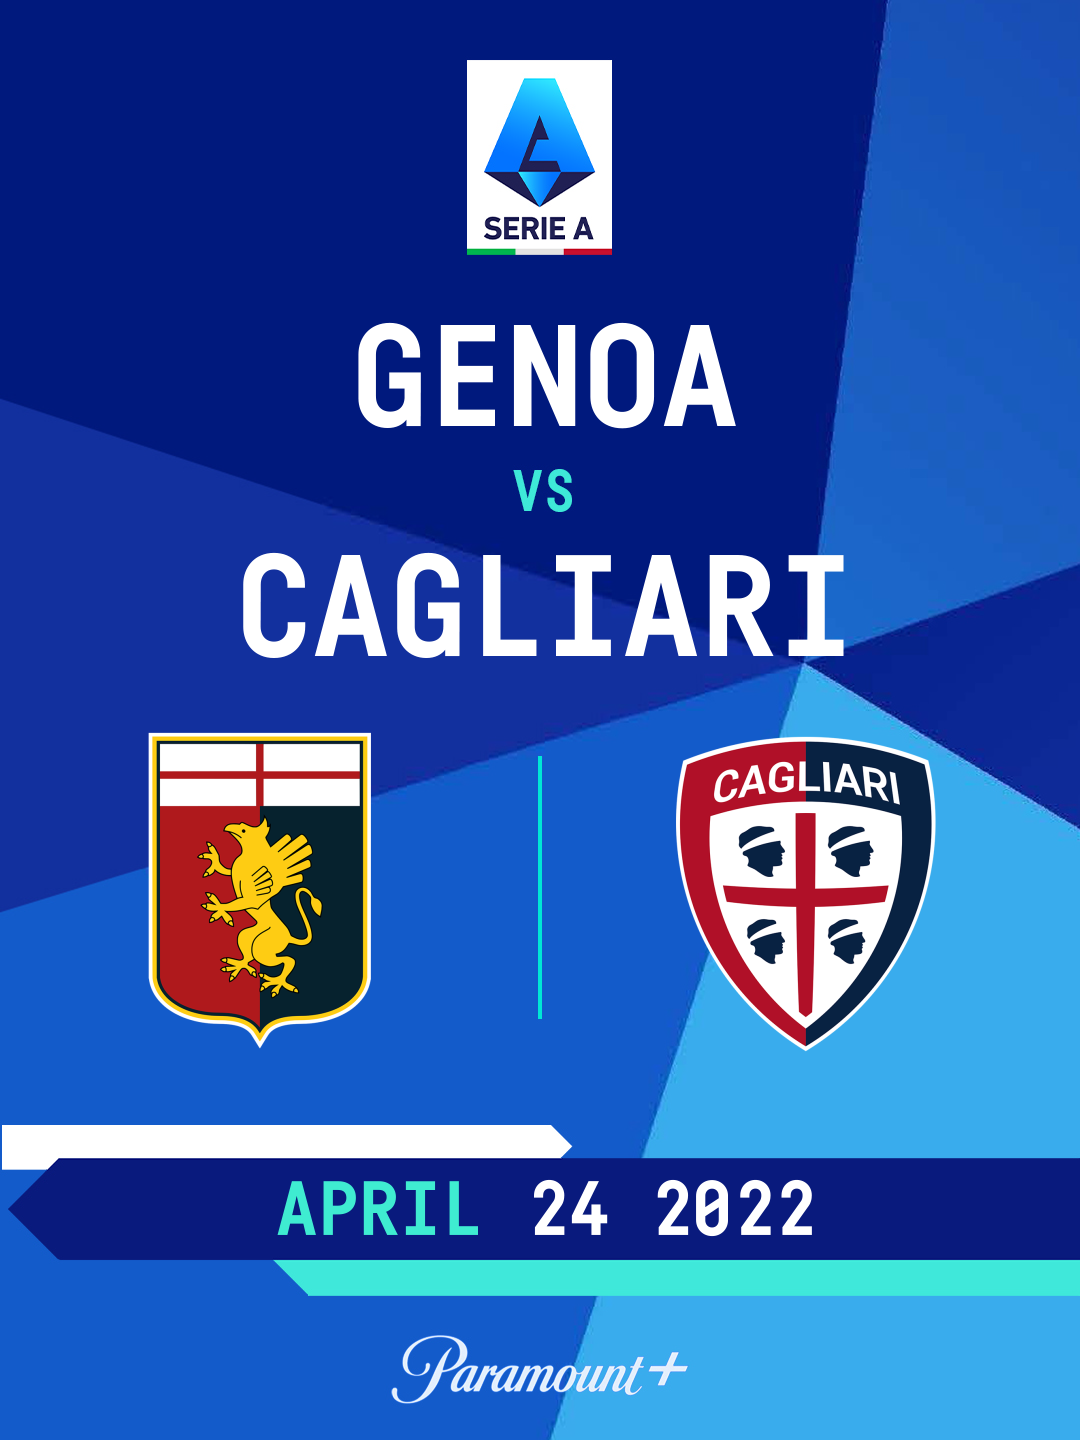 Cagliari vs. Genoa (Serie A) 12/26/18 - Stream the Match Live